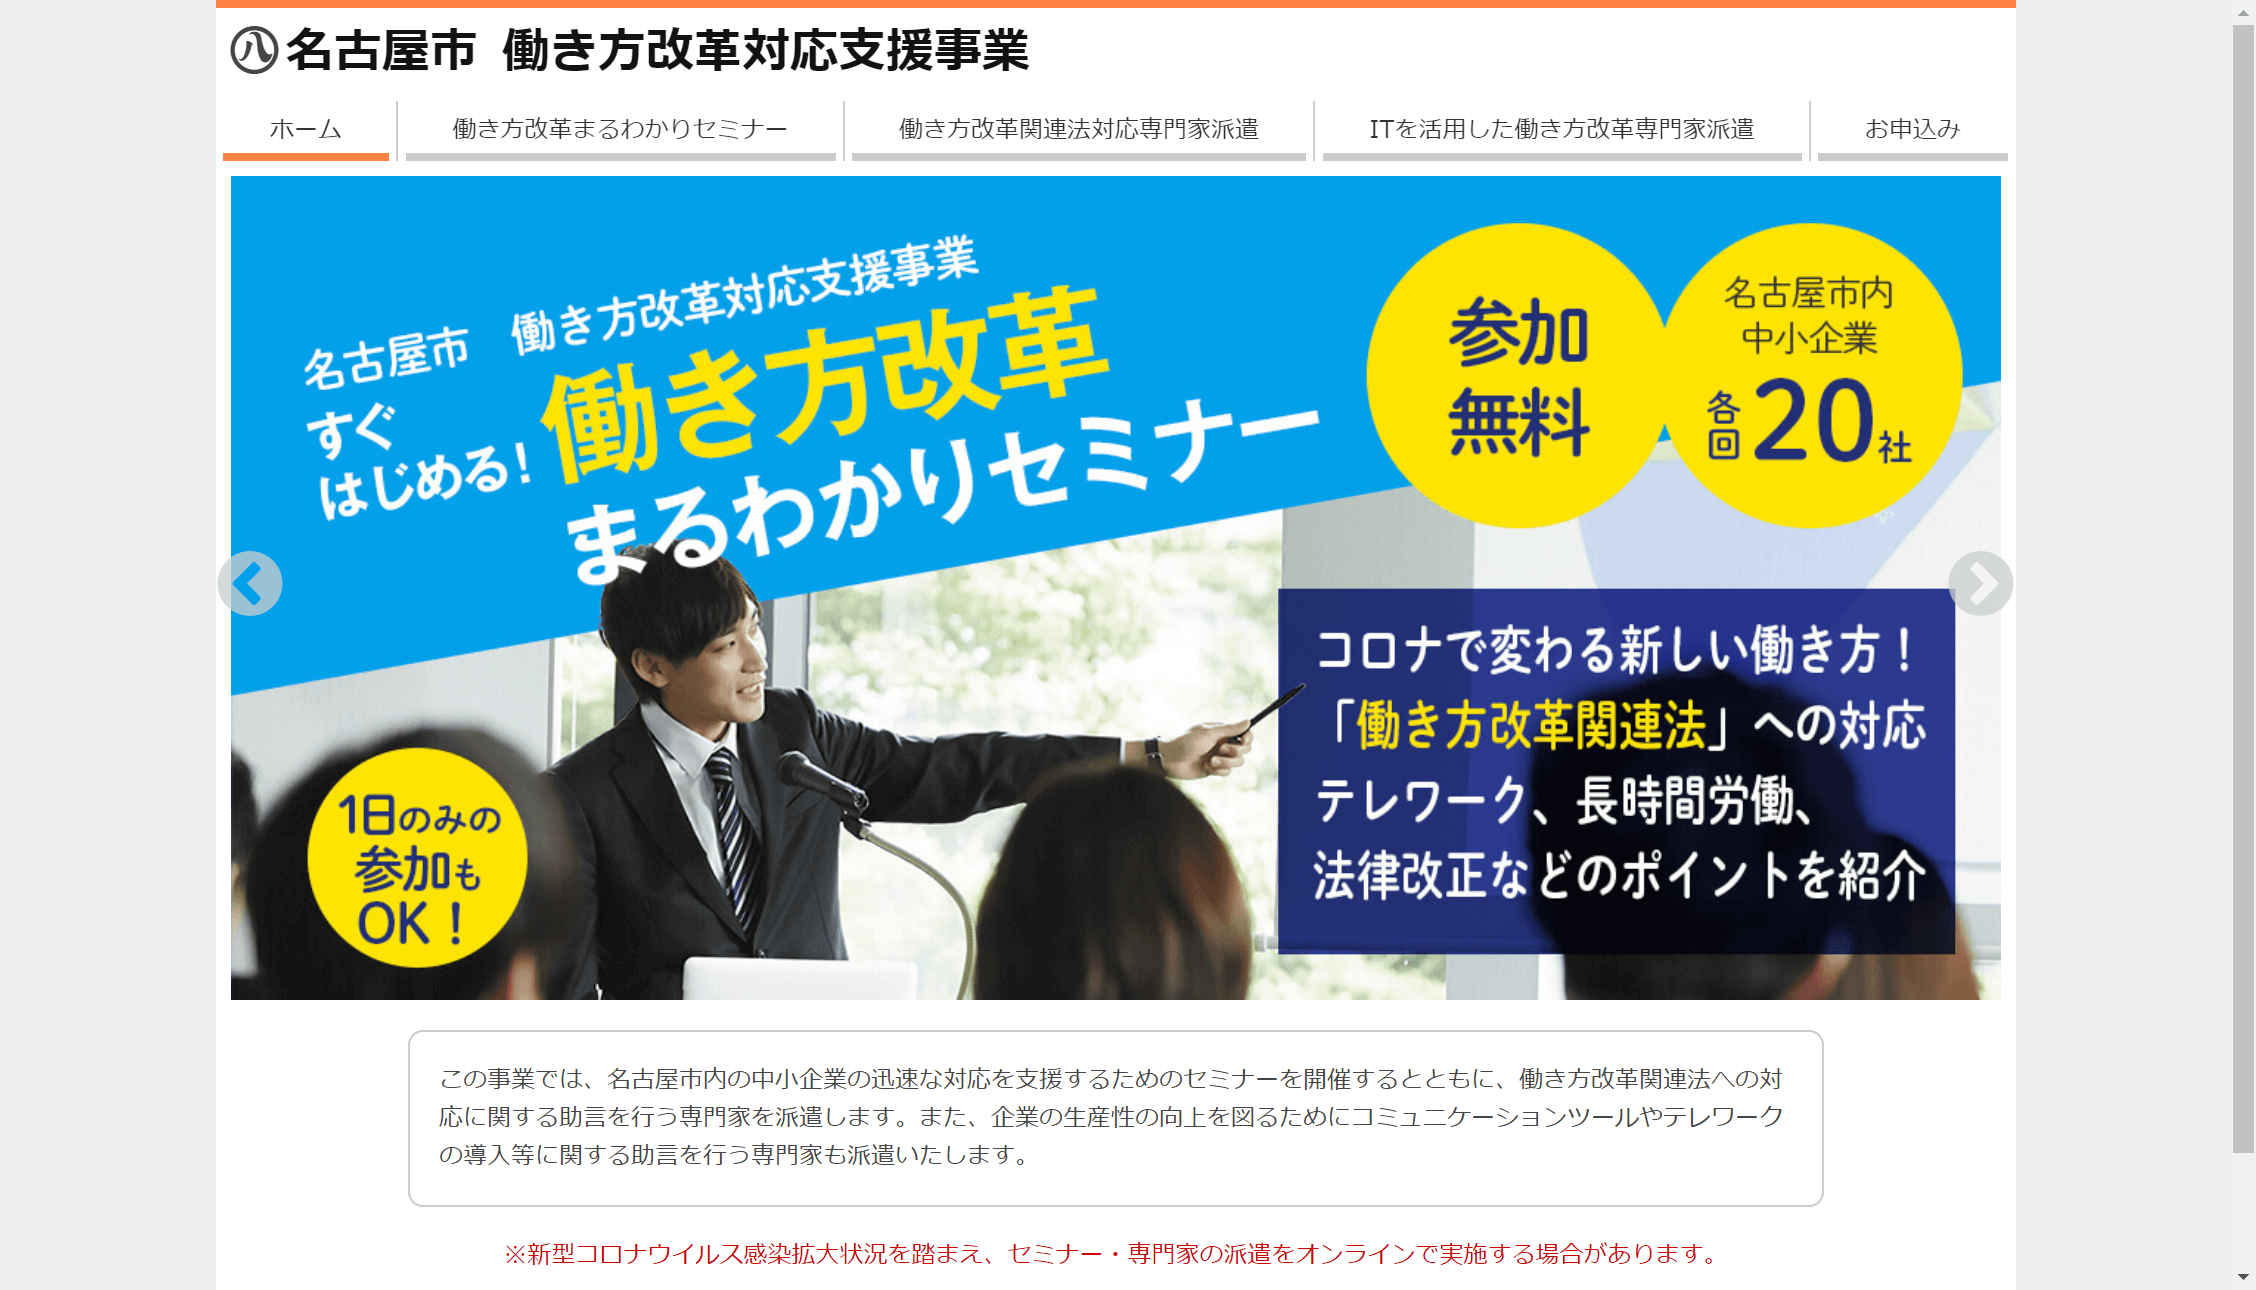 【名古屋市】中小企業の働き方改革への対応を無料で支援